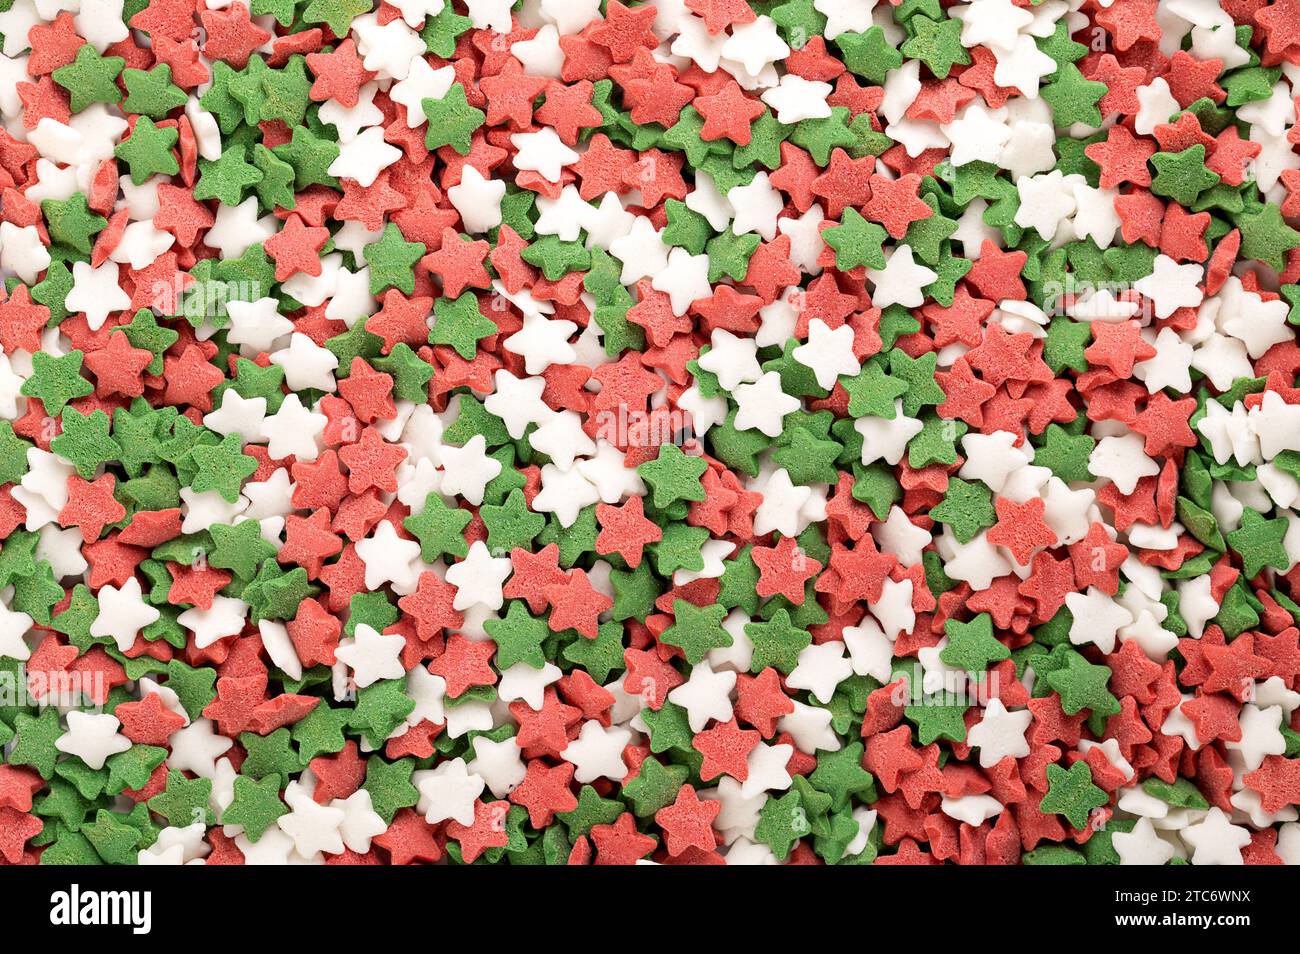 Saupoudreuses de sucre en forme d'étoile. Fond de bonbons à confettis verts, rouges et blancs, confiseries à base de sucre et de riz. Banque D'Images